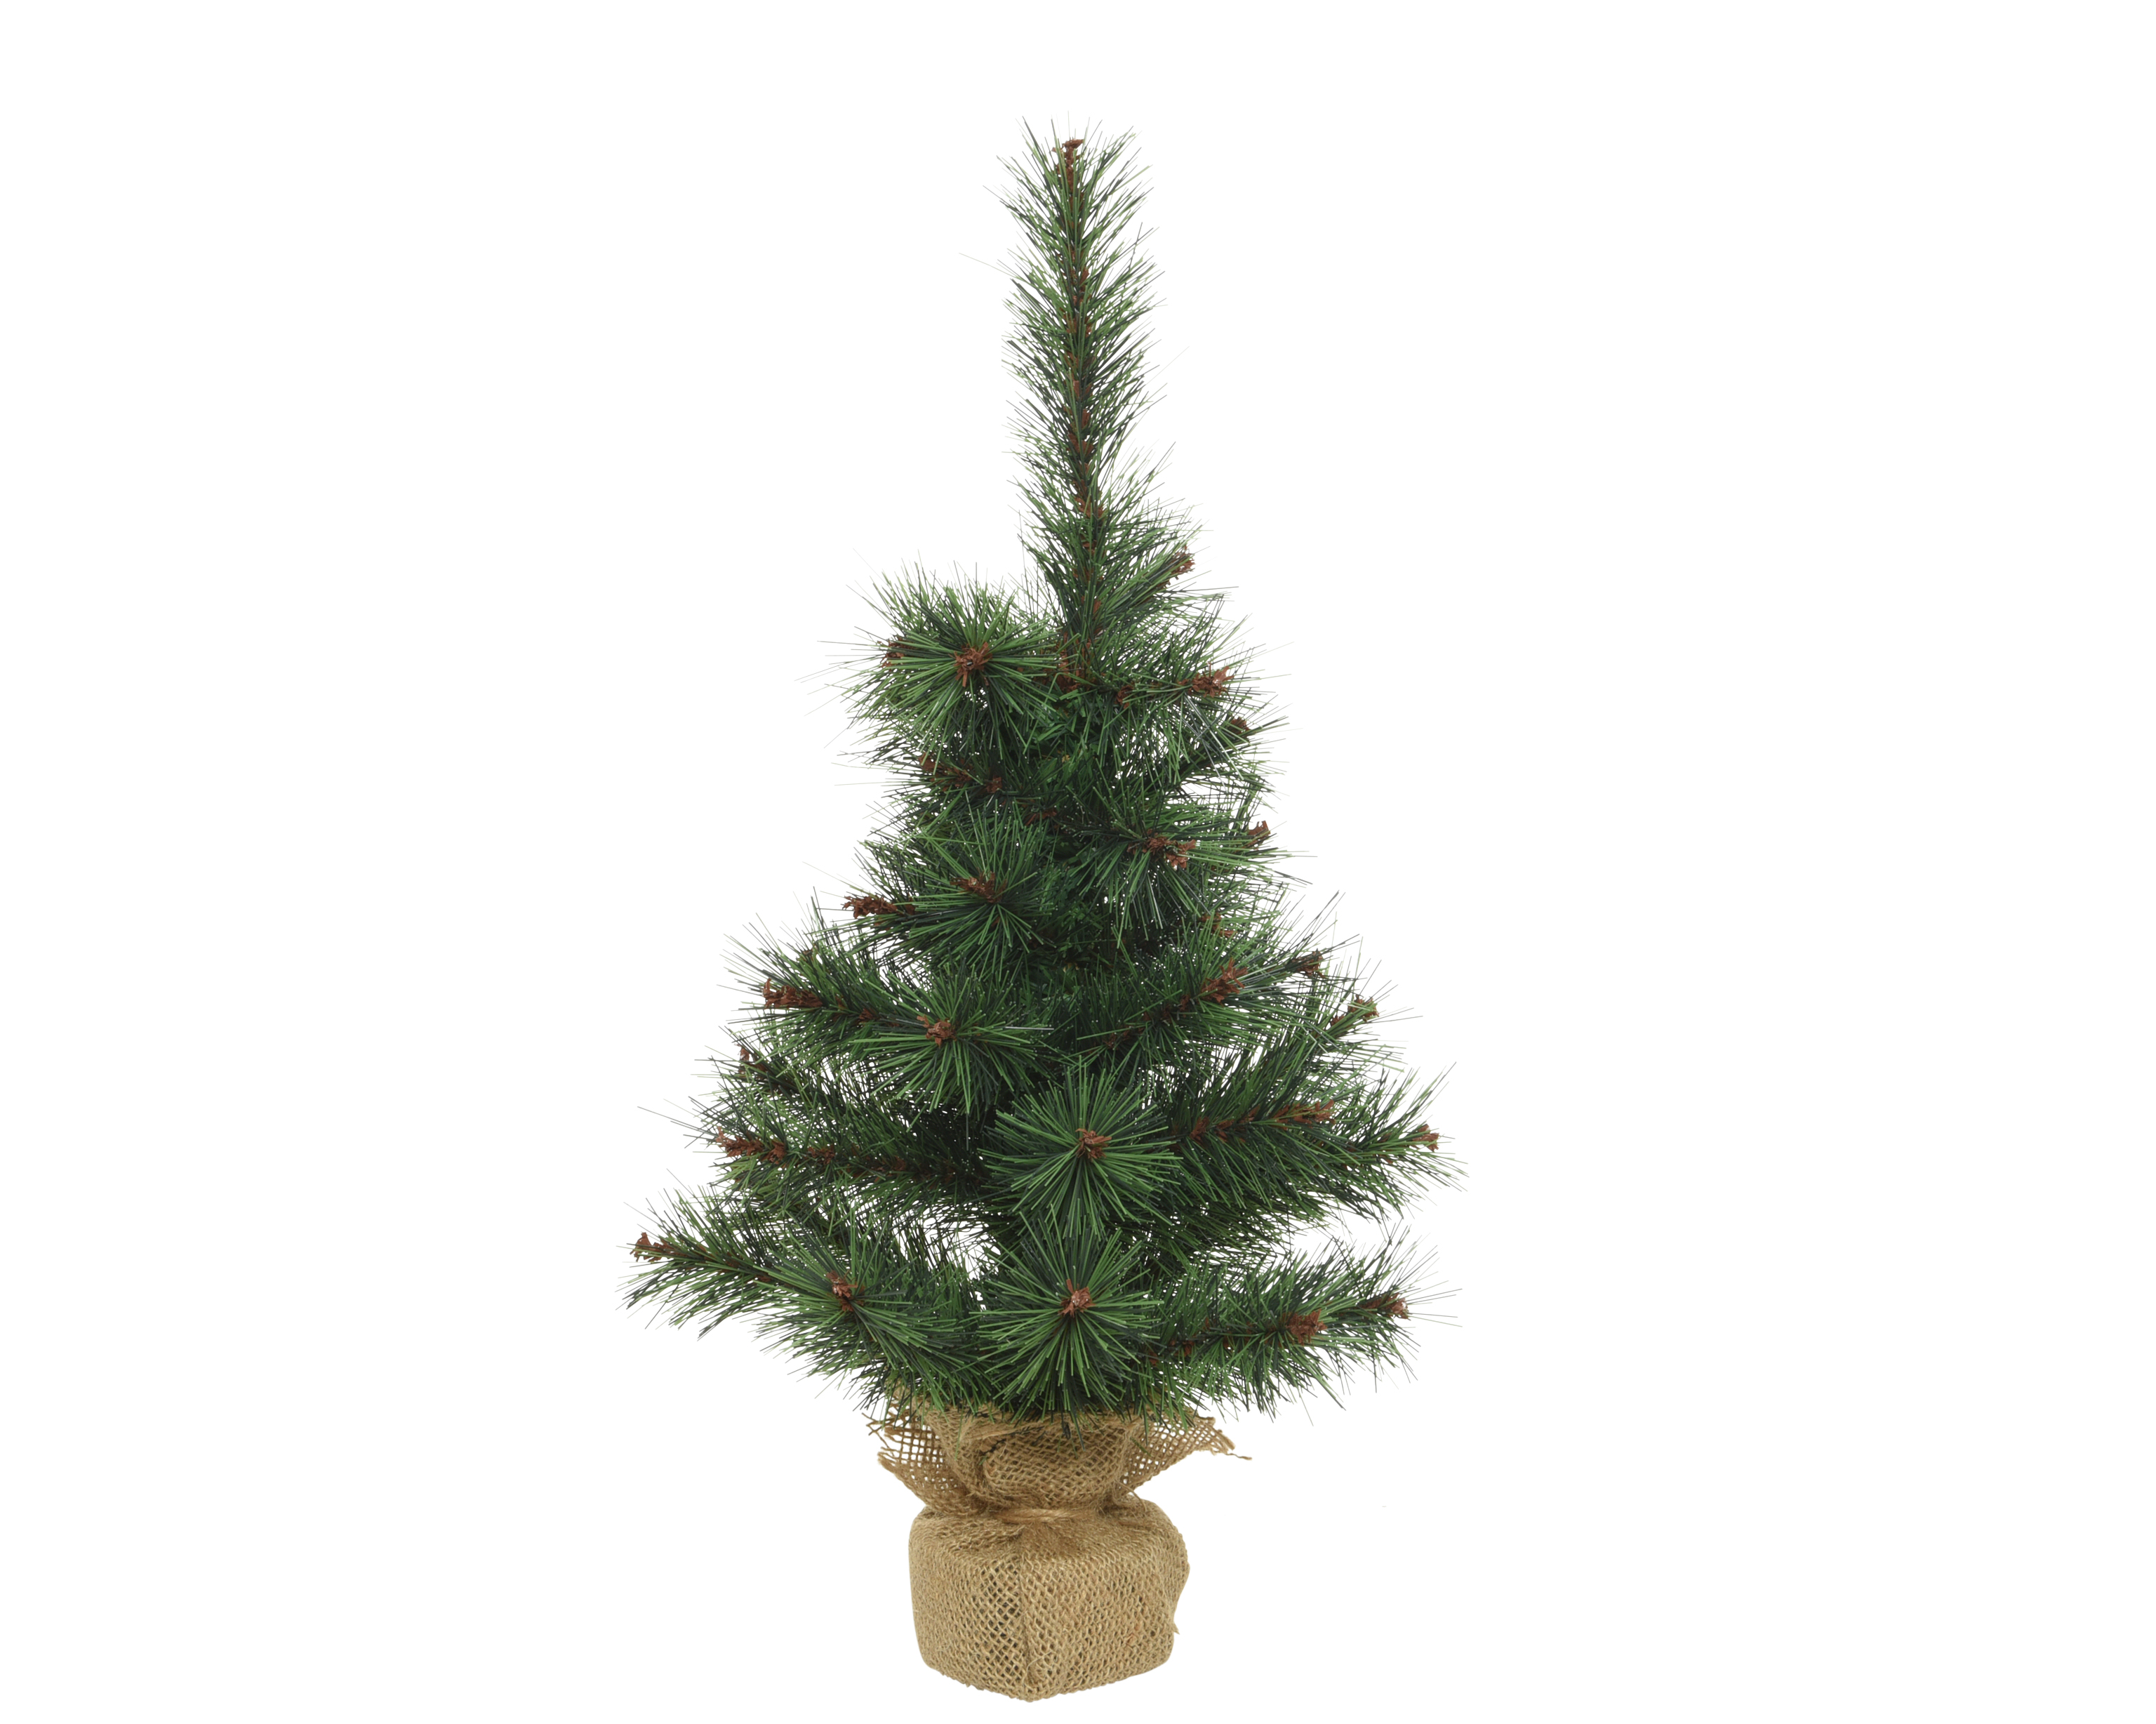 zijde zal ik doen beweeglijkheid Decoris mini kerstboom groen 60cm